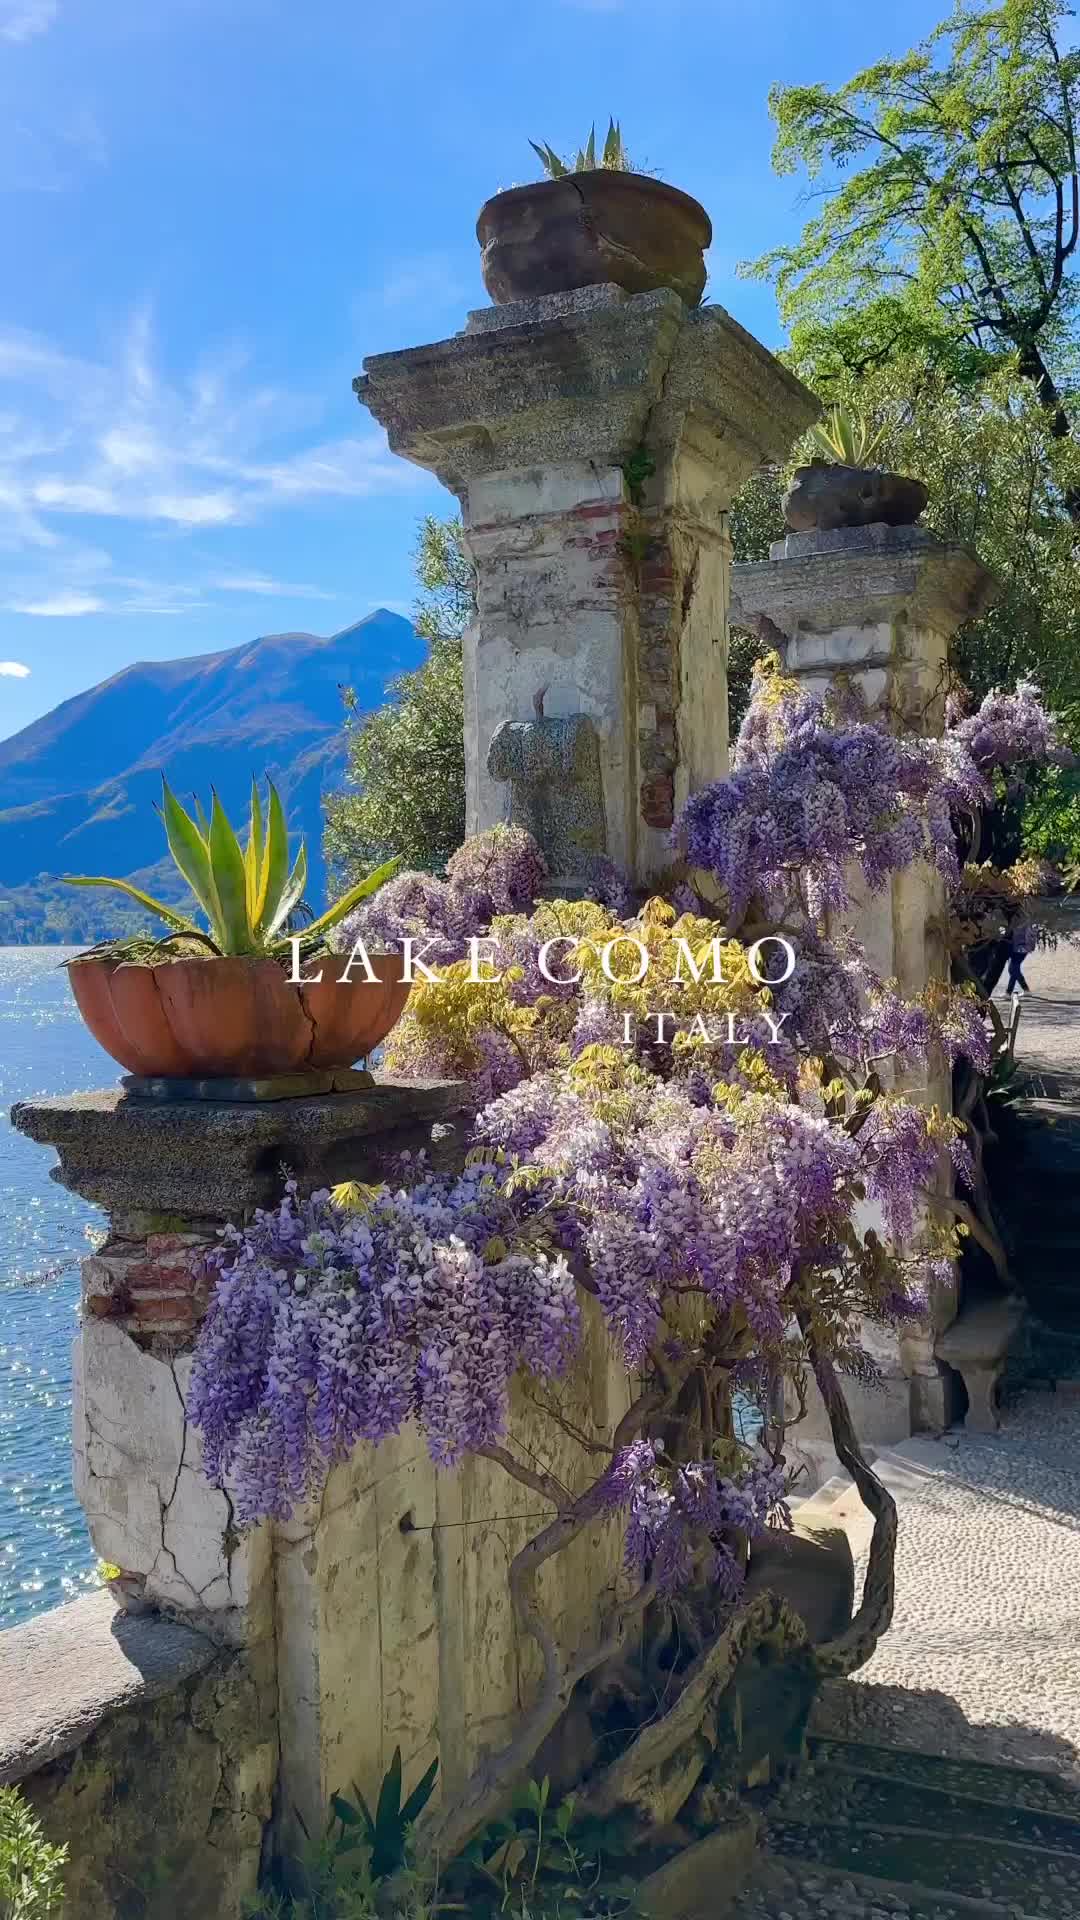 Lake Como: Summer Awaits in Beautiful Blevio, Italy